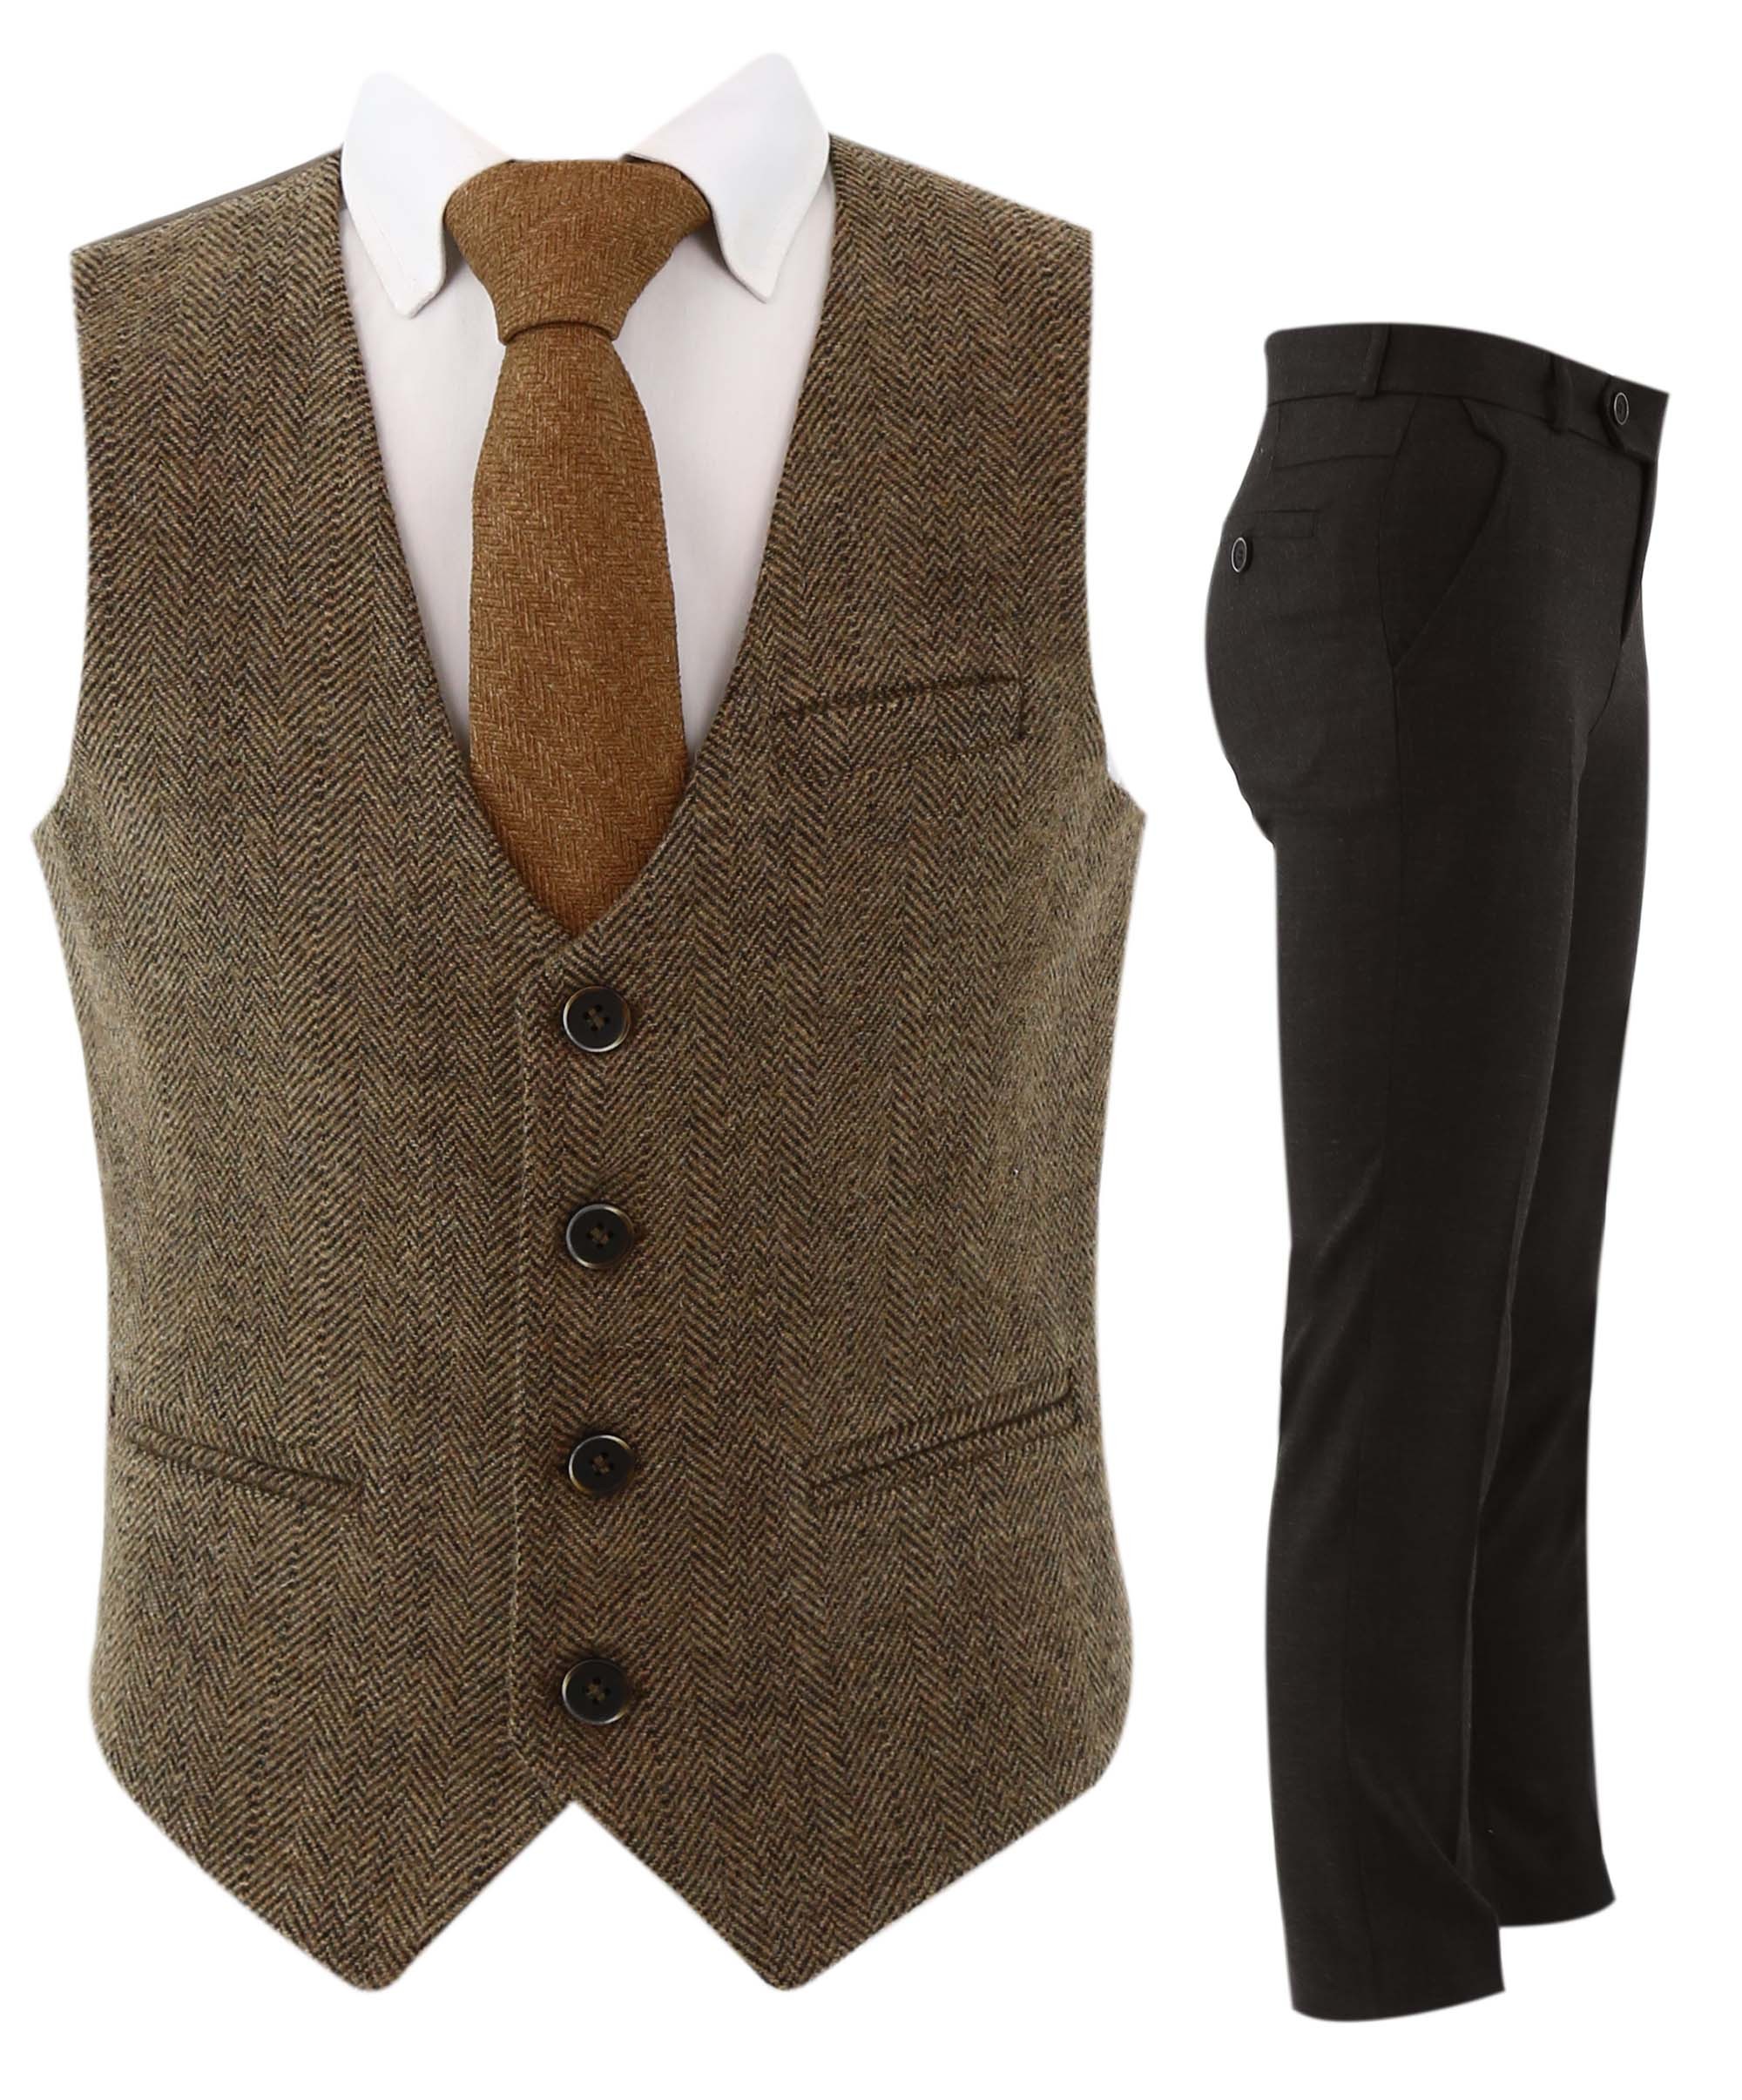 Boys Herringbone Tweed Waistcoat Suit - Brown